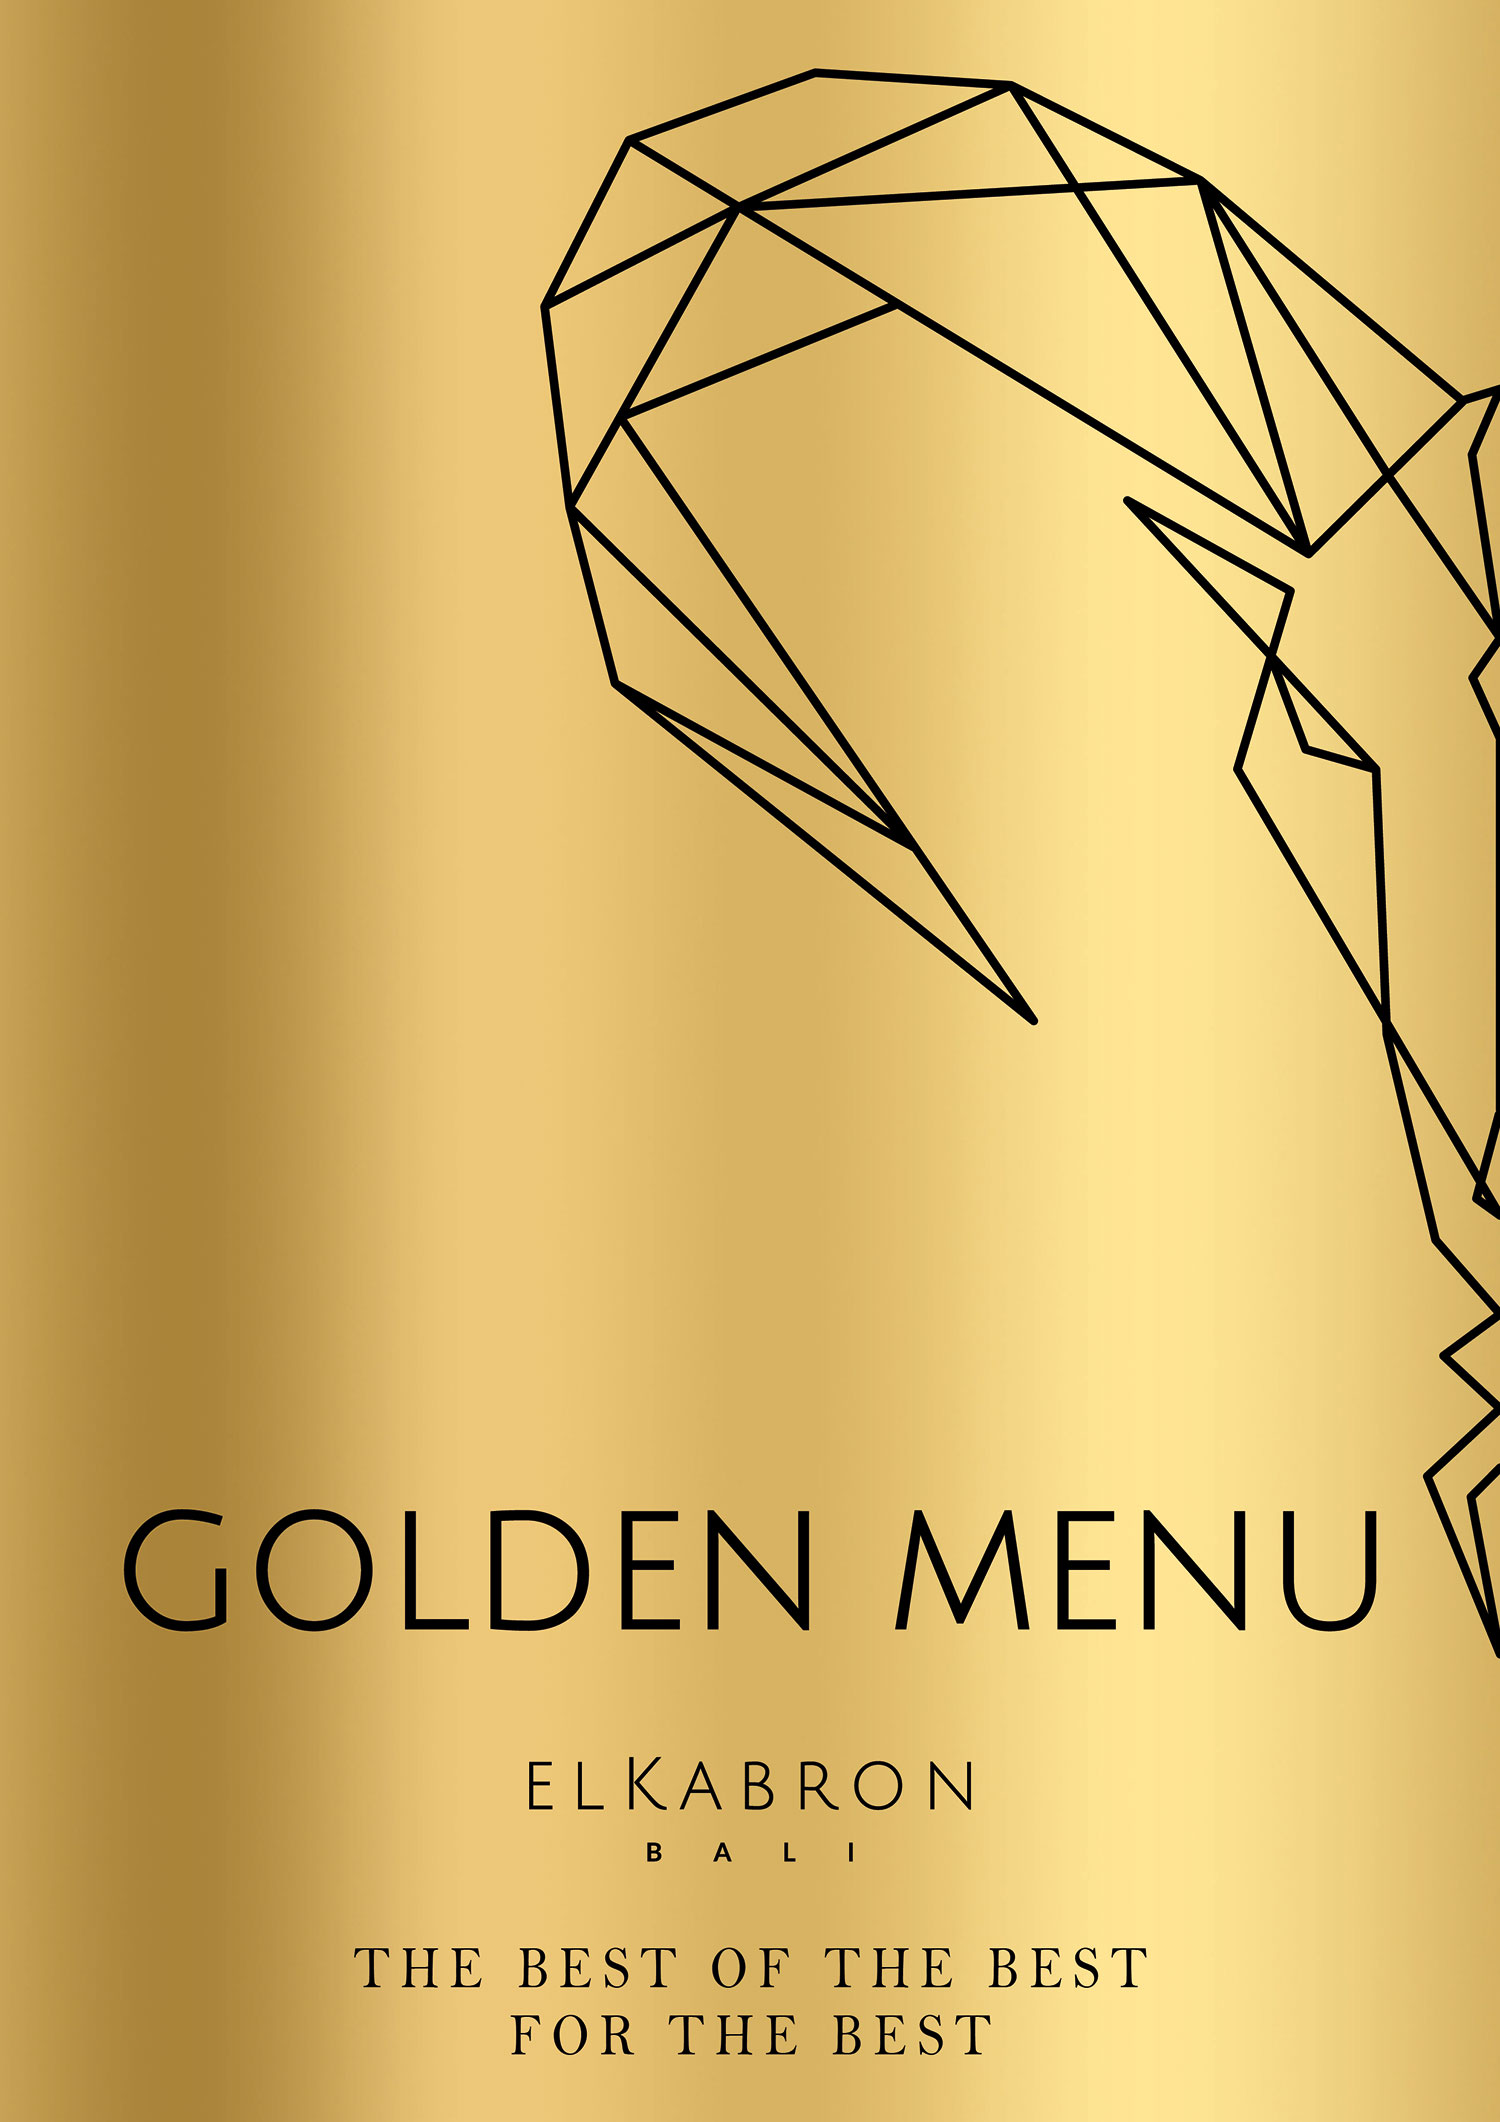 Golden menu